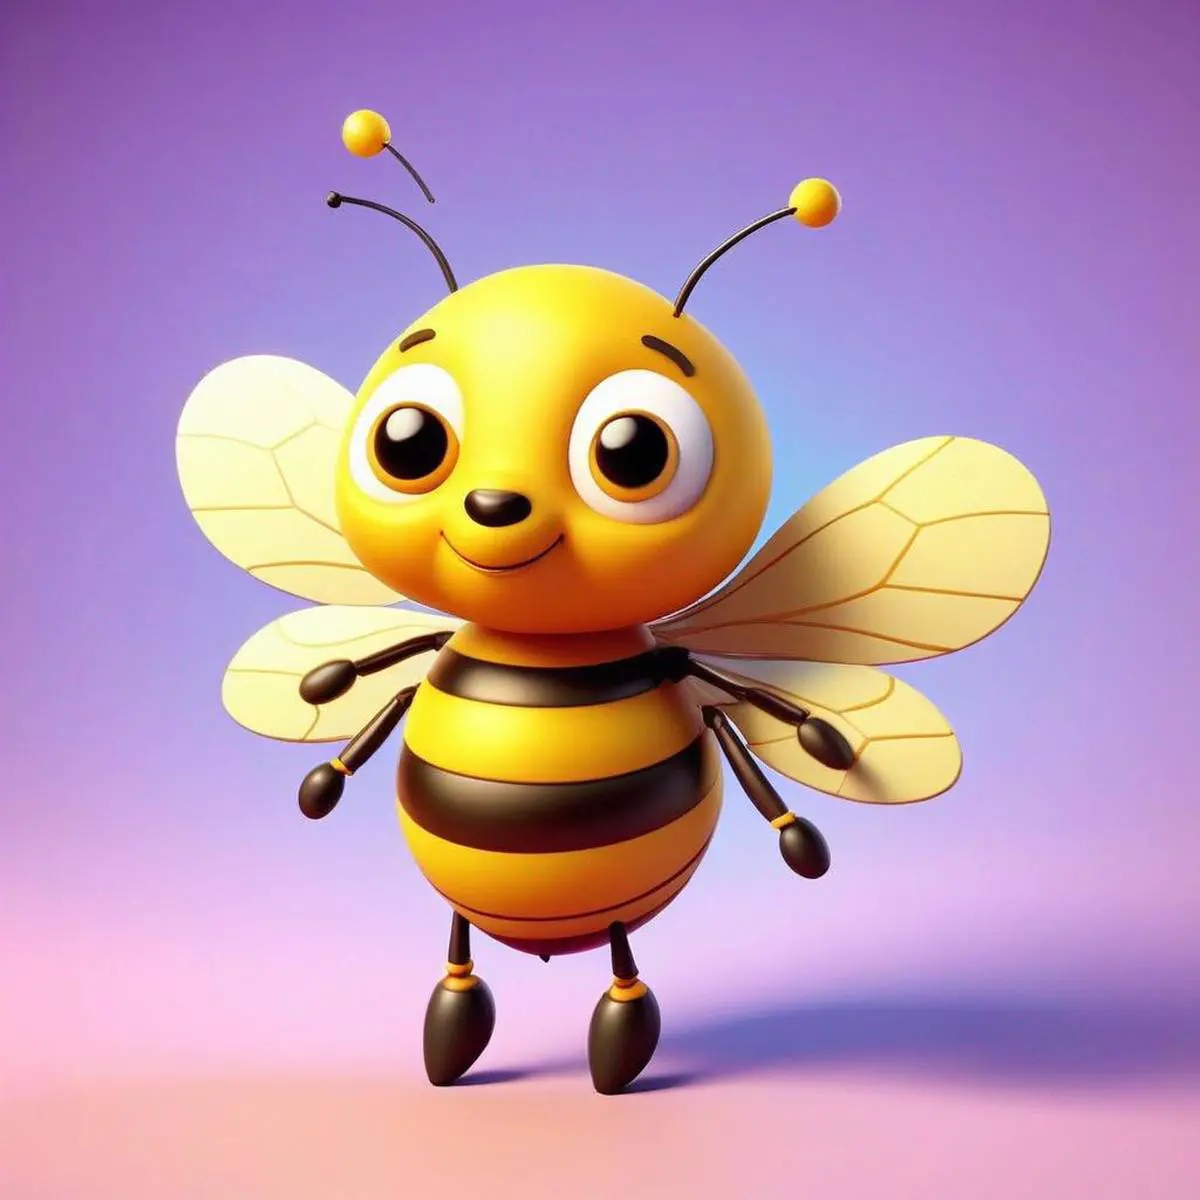 Honeybee puns